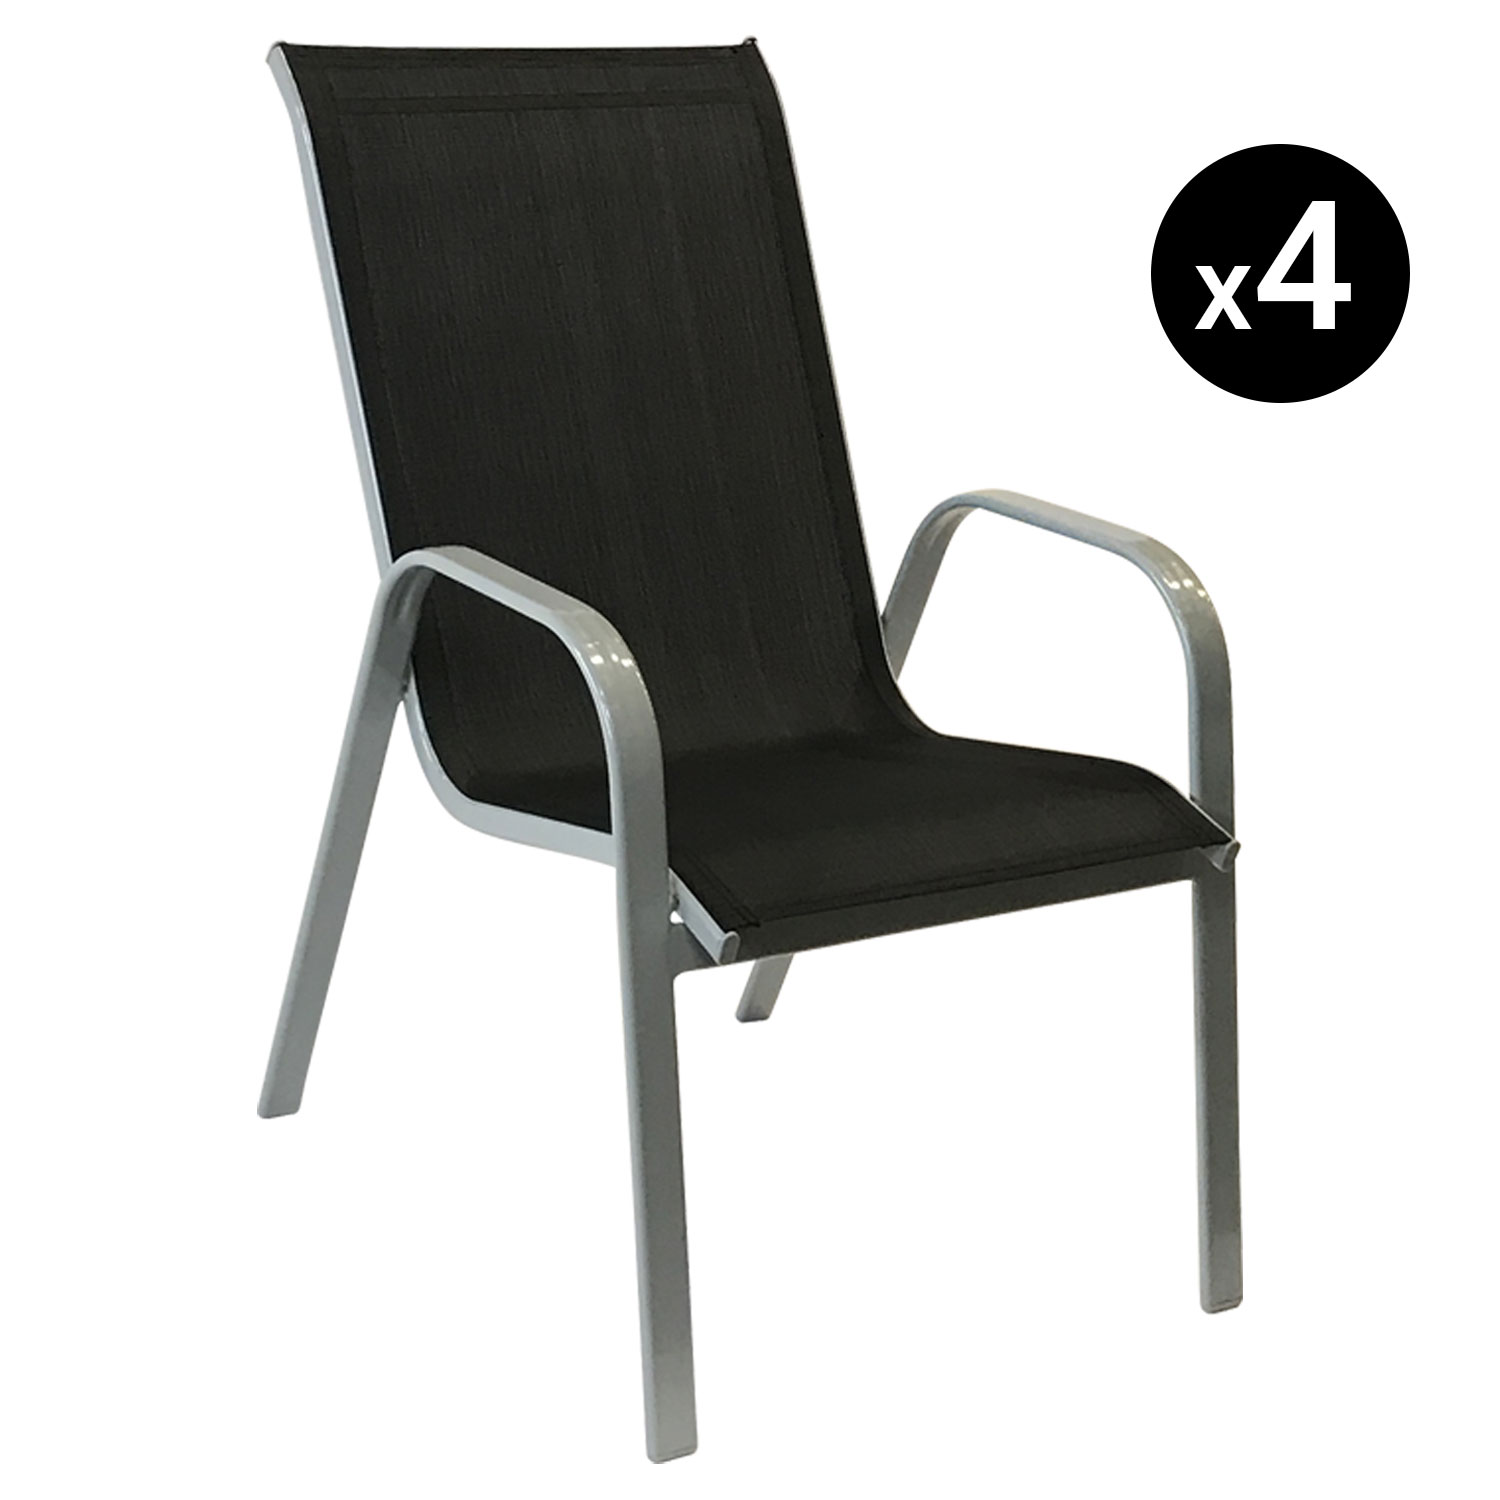 Satz von 4 Stühlen MARBELLA aus schwarzem Textilene - grauem Aluminium